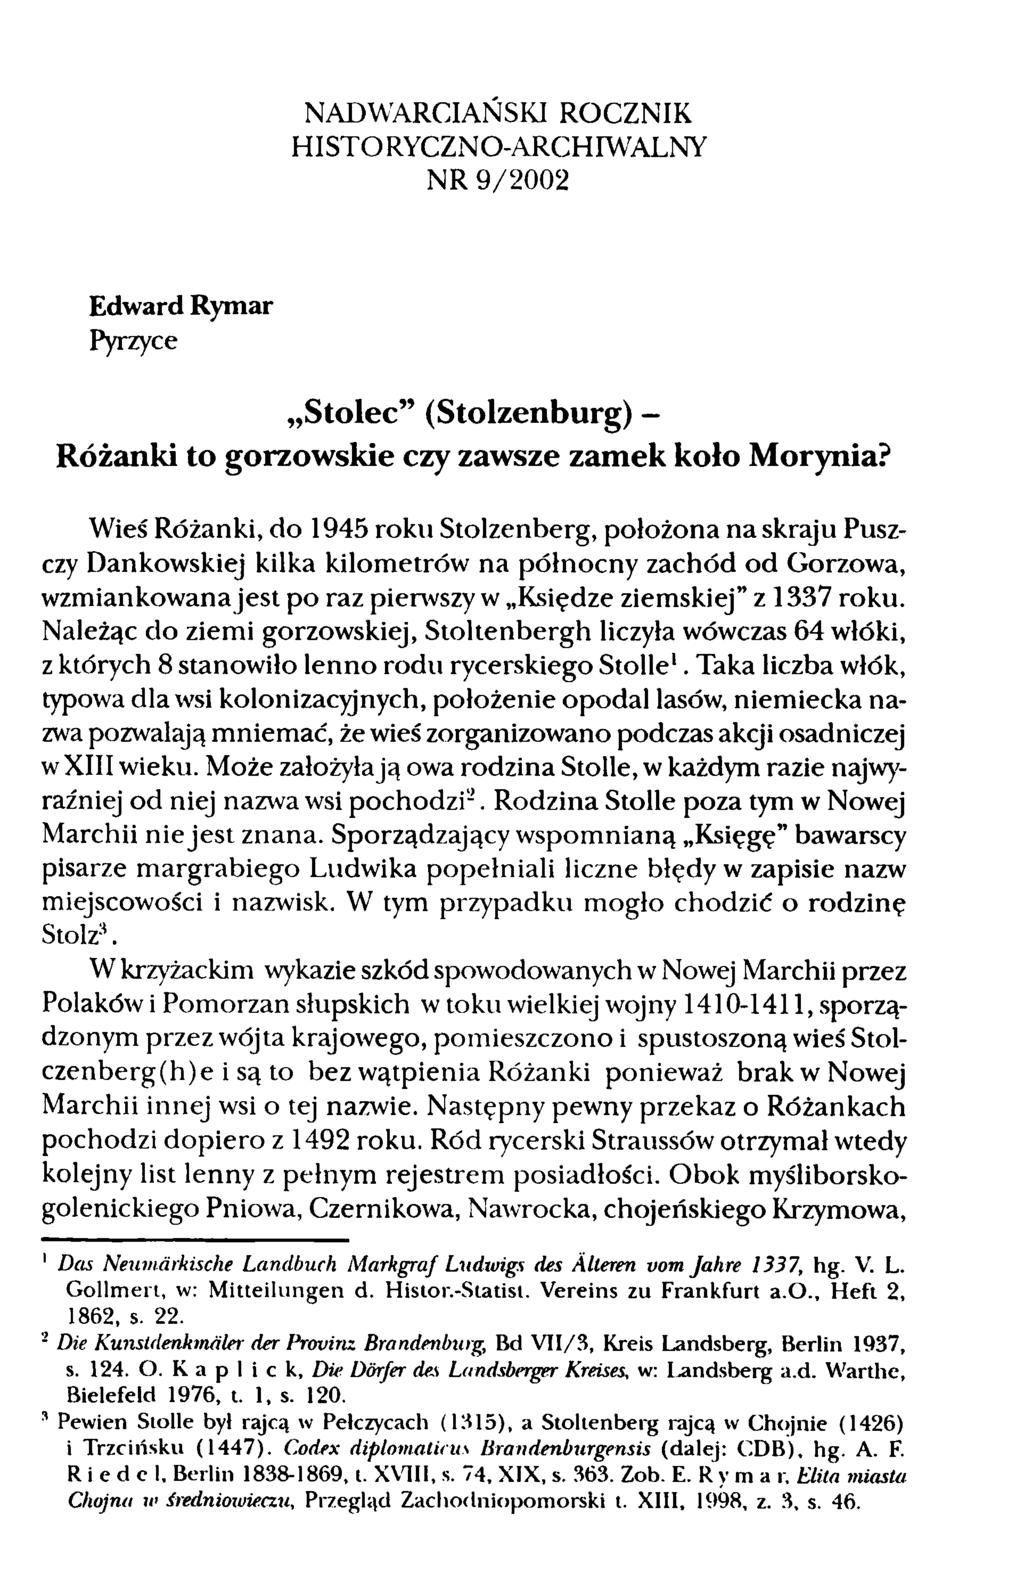 NADWARCIAŃSKI ROCZNIK HISTORYCZNO-ARCHIWALNY NR 9/2002 Edward Rymar Pyrzyce Stolec (Stolzenburg) - Różanki to gorzowskie czy zawsze zamek koło Morynia?